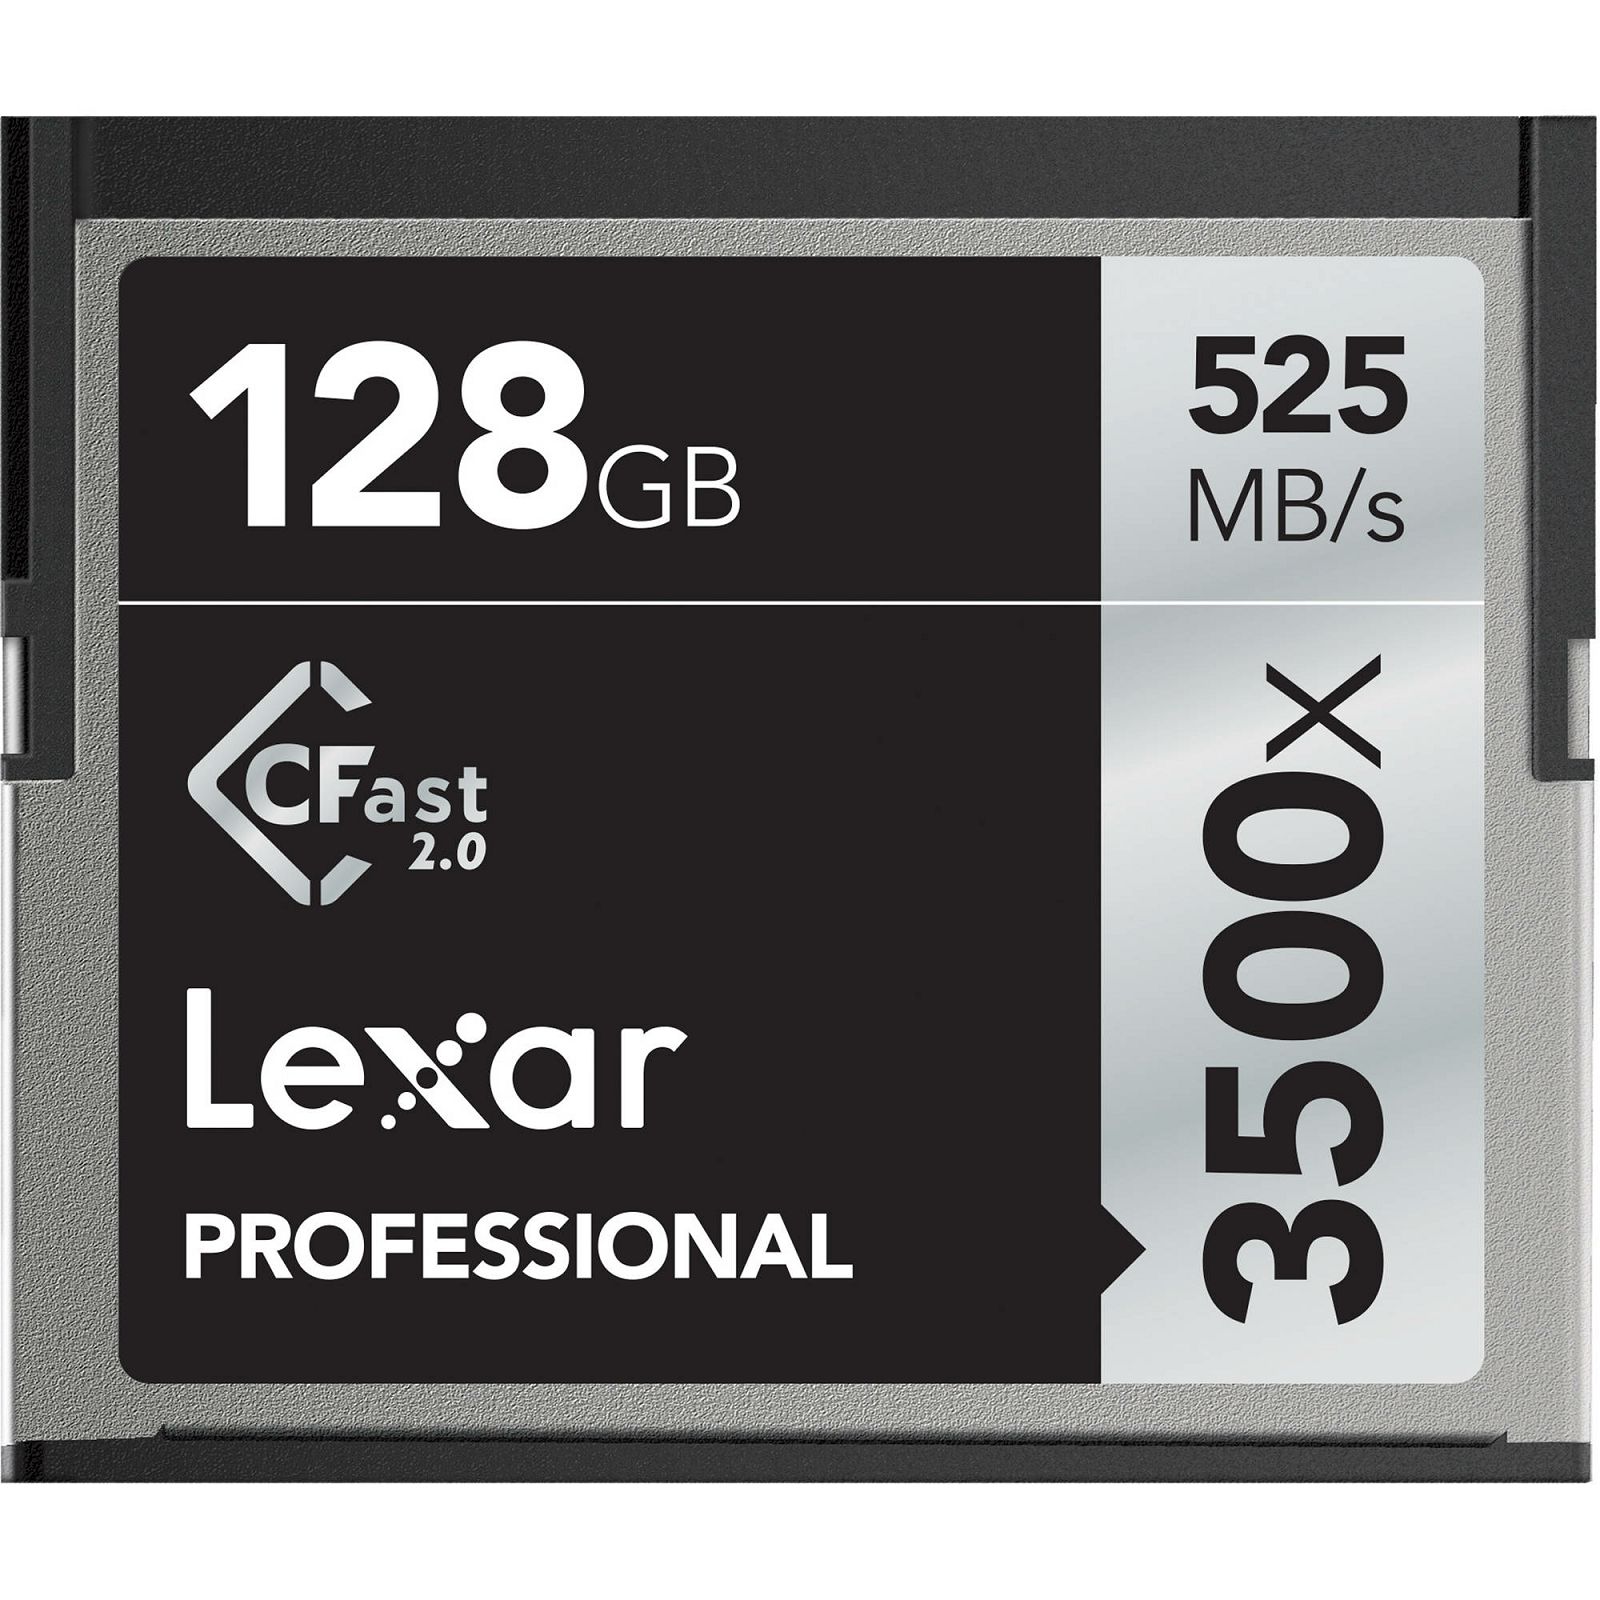 Lexar 128GB 3500x Pro CFast 2.0 rs 525MB/s ws 445 MB/s Professional memorijska kartica za fotoaparat i kameru (LC128CRBEU3500)